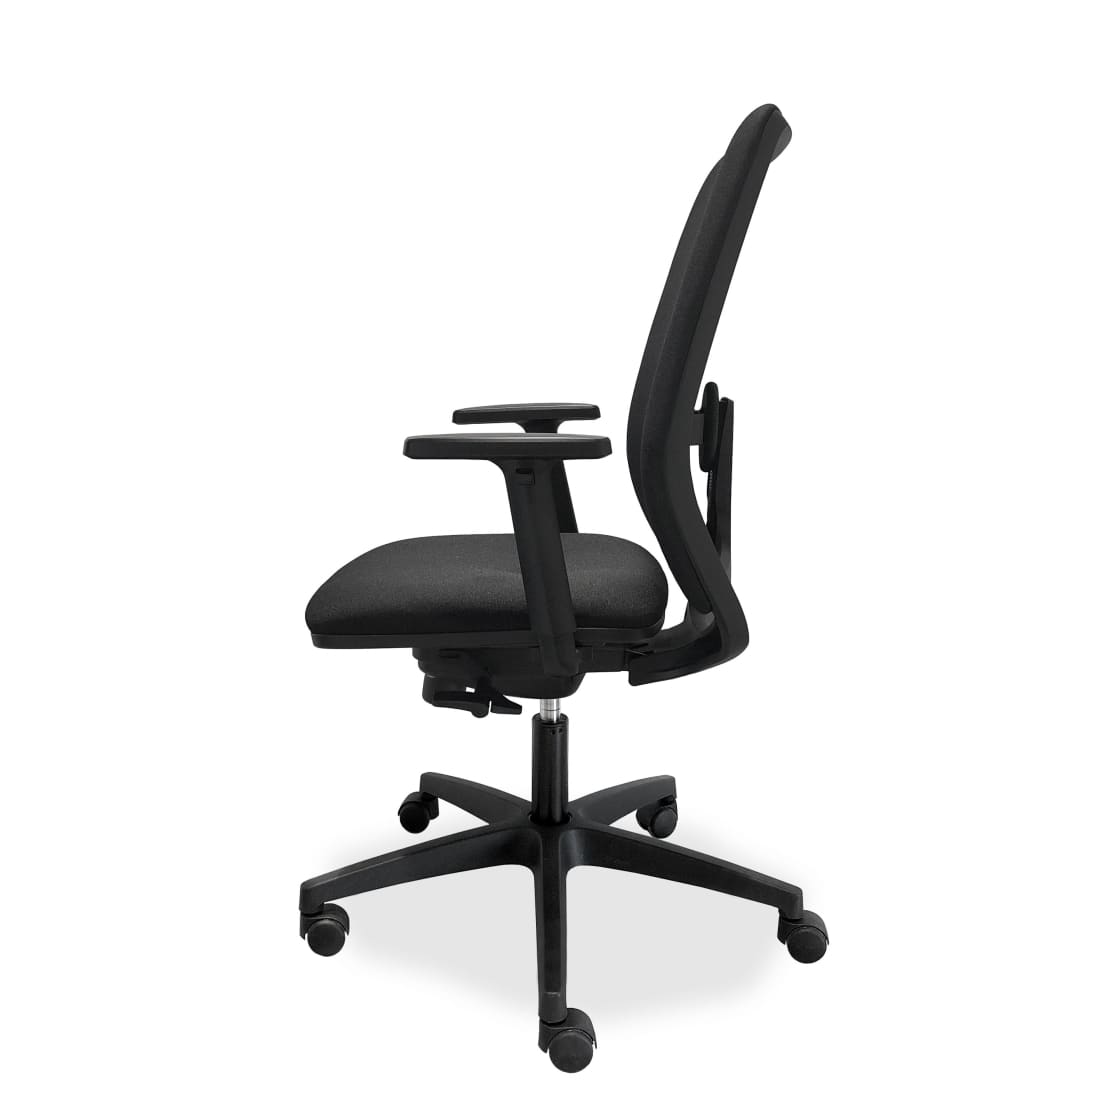 ergonomische-bureaustoel-comfort-de-singel-nen-1335-bureaustoelen-stoel-auto-deel-387_0145039c-b6bf-4988-ae44-01c2b1fa34fb.jpg